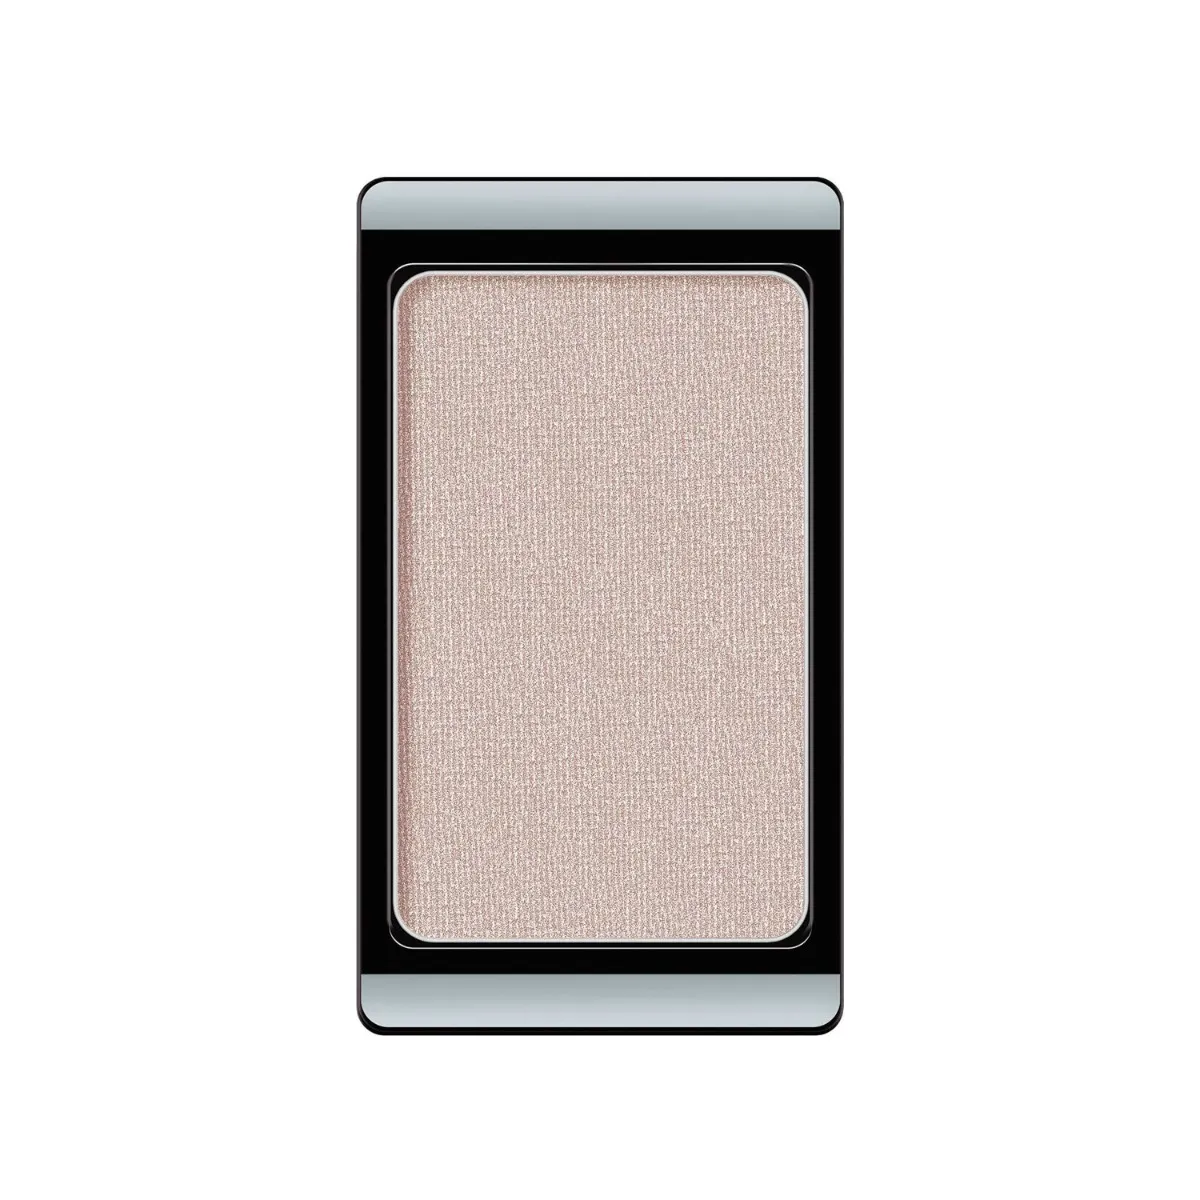 ARTDECO Eyeshadow cień do powiek z magnesem, 27 – Pearly Luxury Skin, 0,8 g